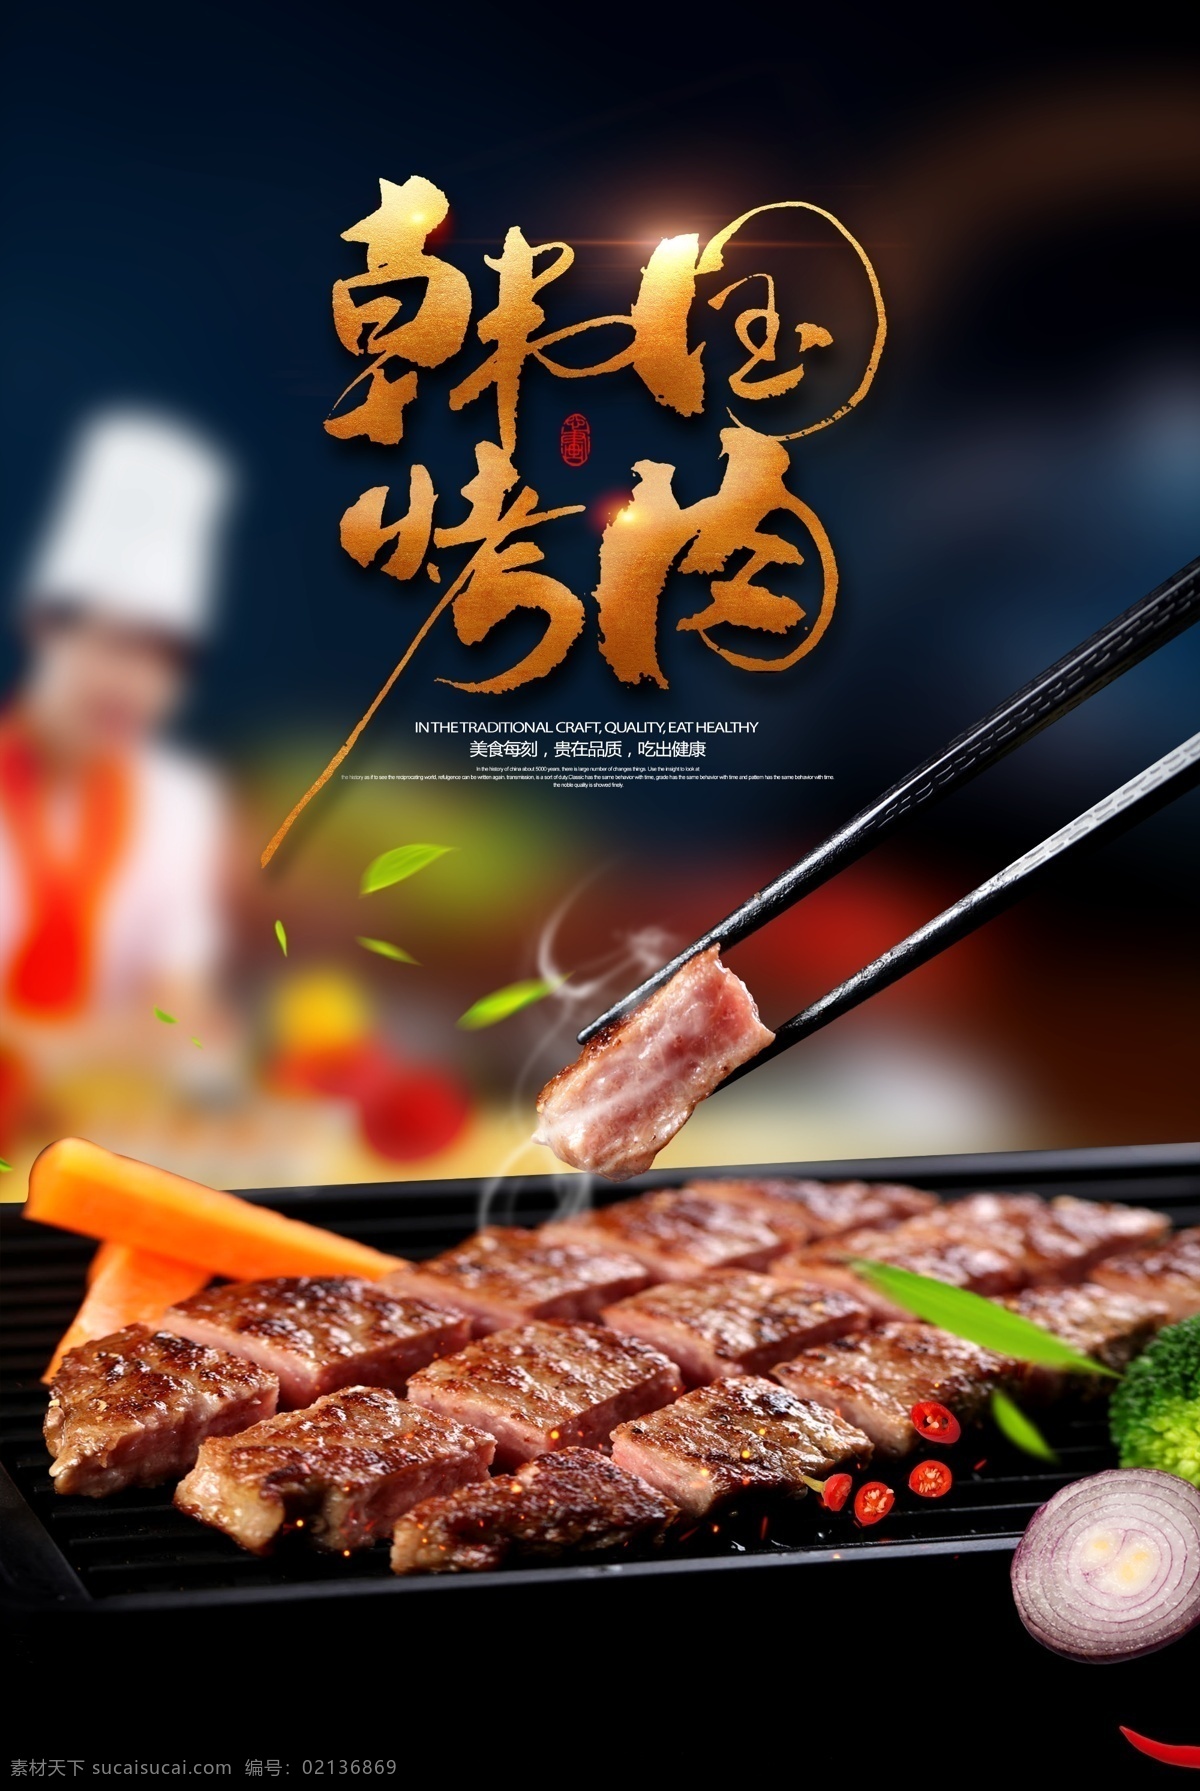 韩国 烤肉 美食 海报 韩国美食 烤肉海报 美食海报 牛排 黑色海报 海报素材